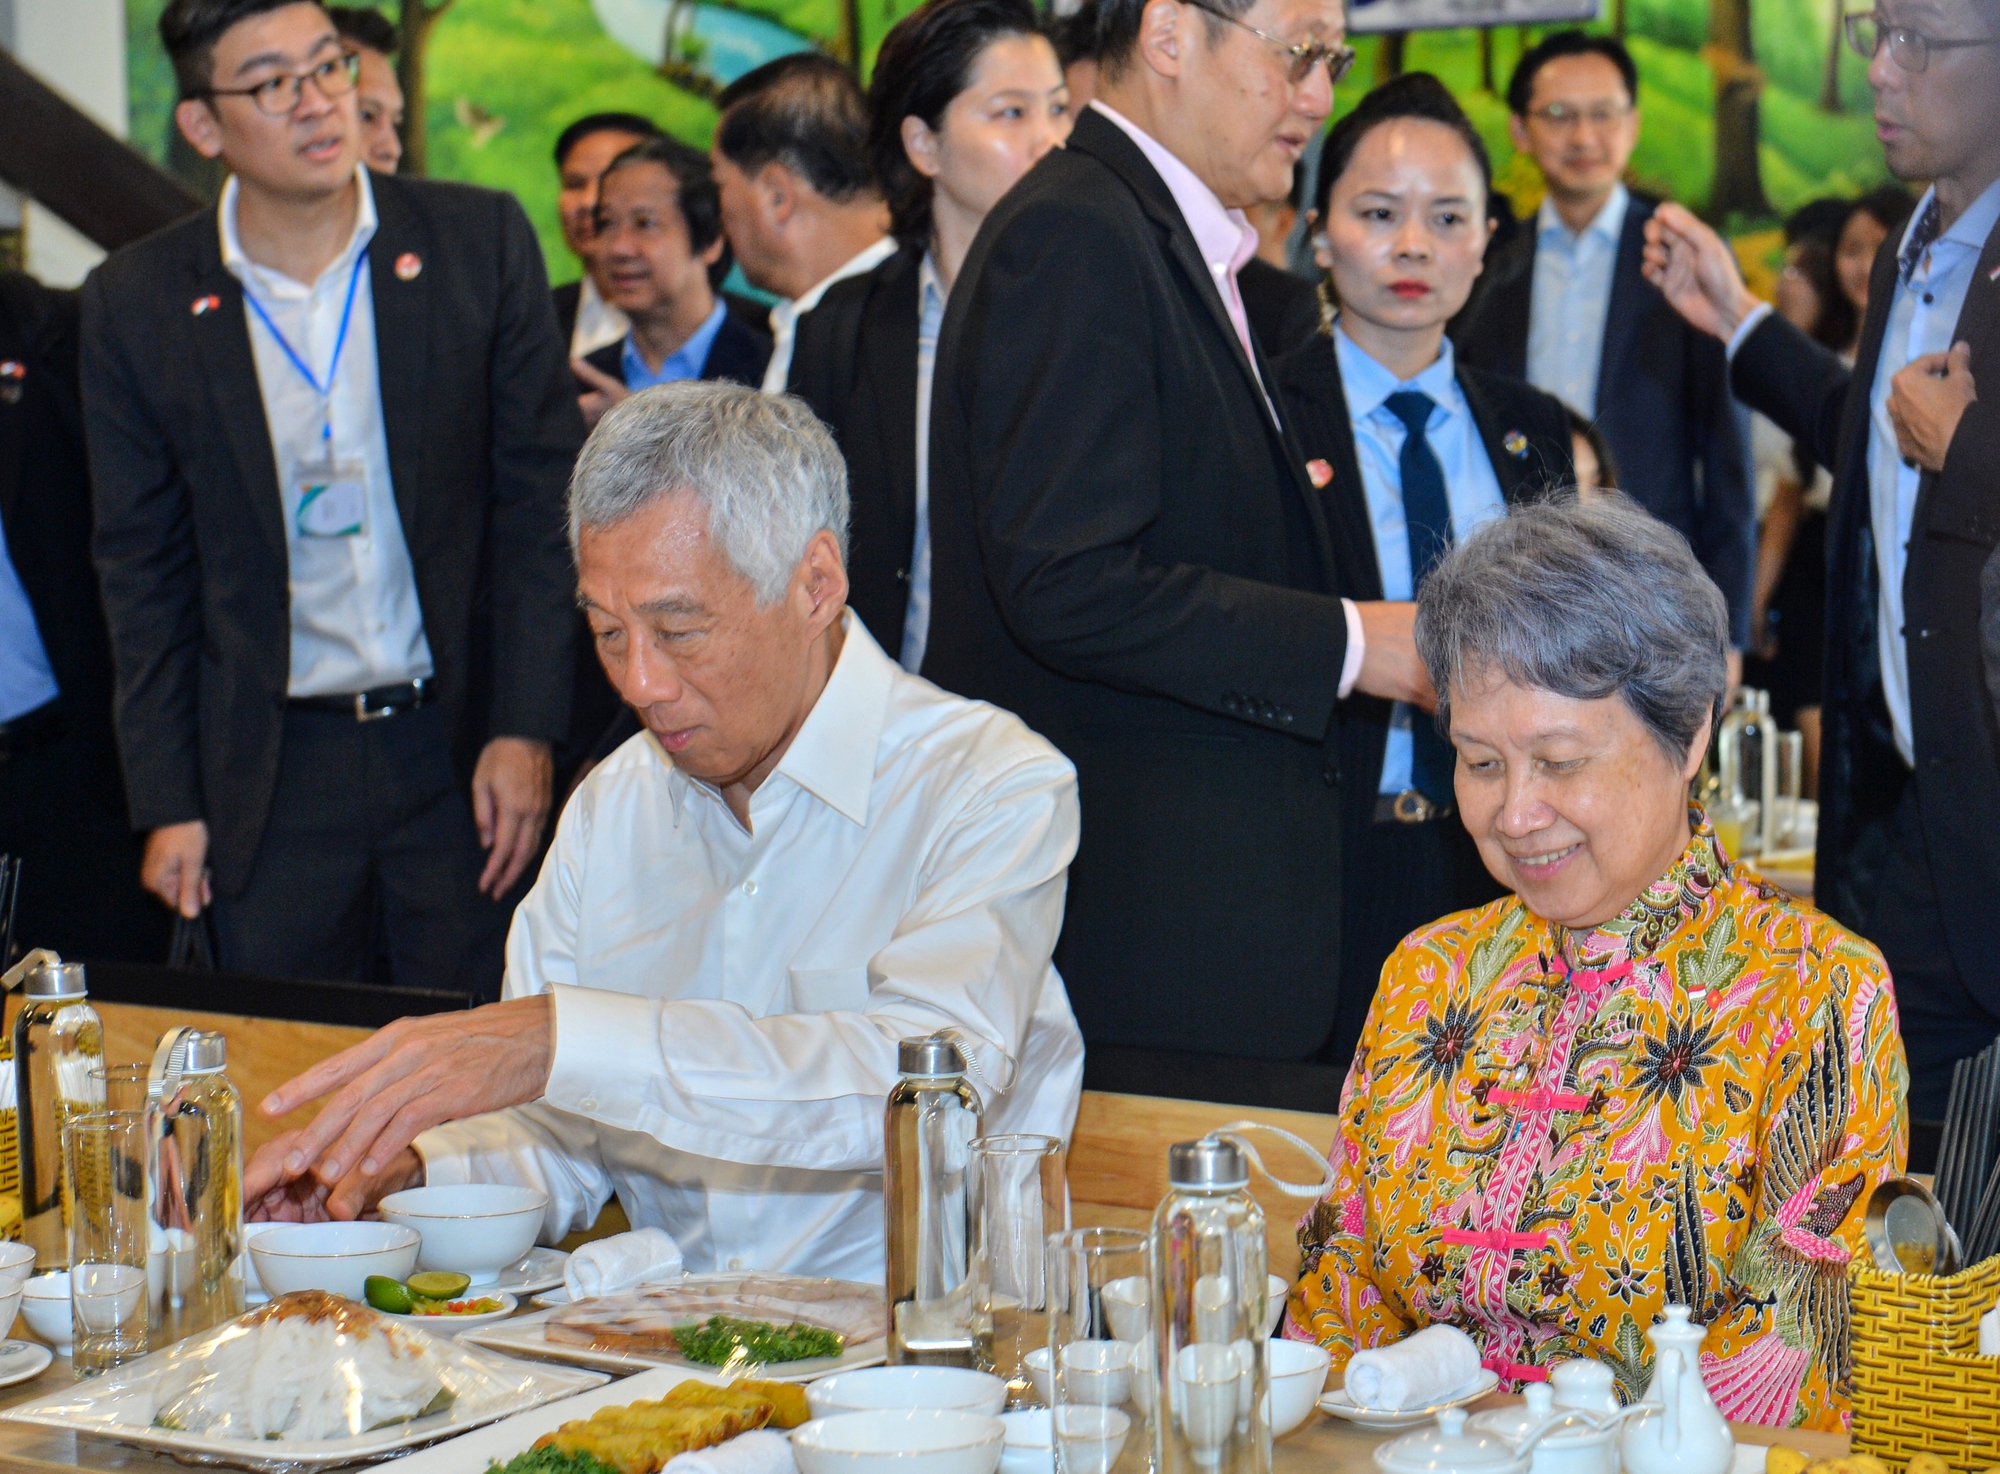 Cận cảnh bữa trưa của Thủ tướng Lý Hiển Long và phu nhân tại Đại học QGHN - Ảnh 5.